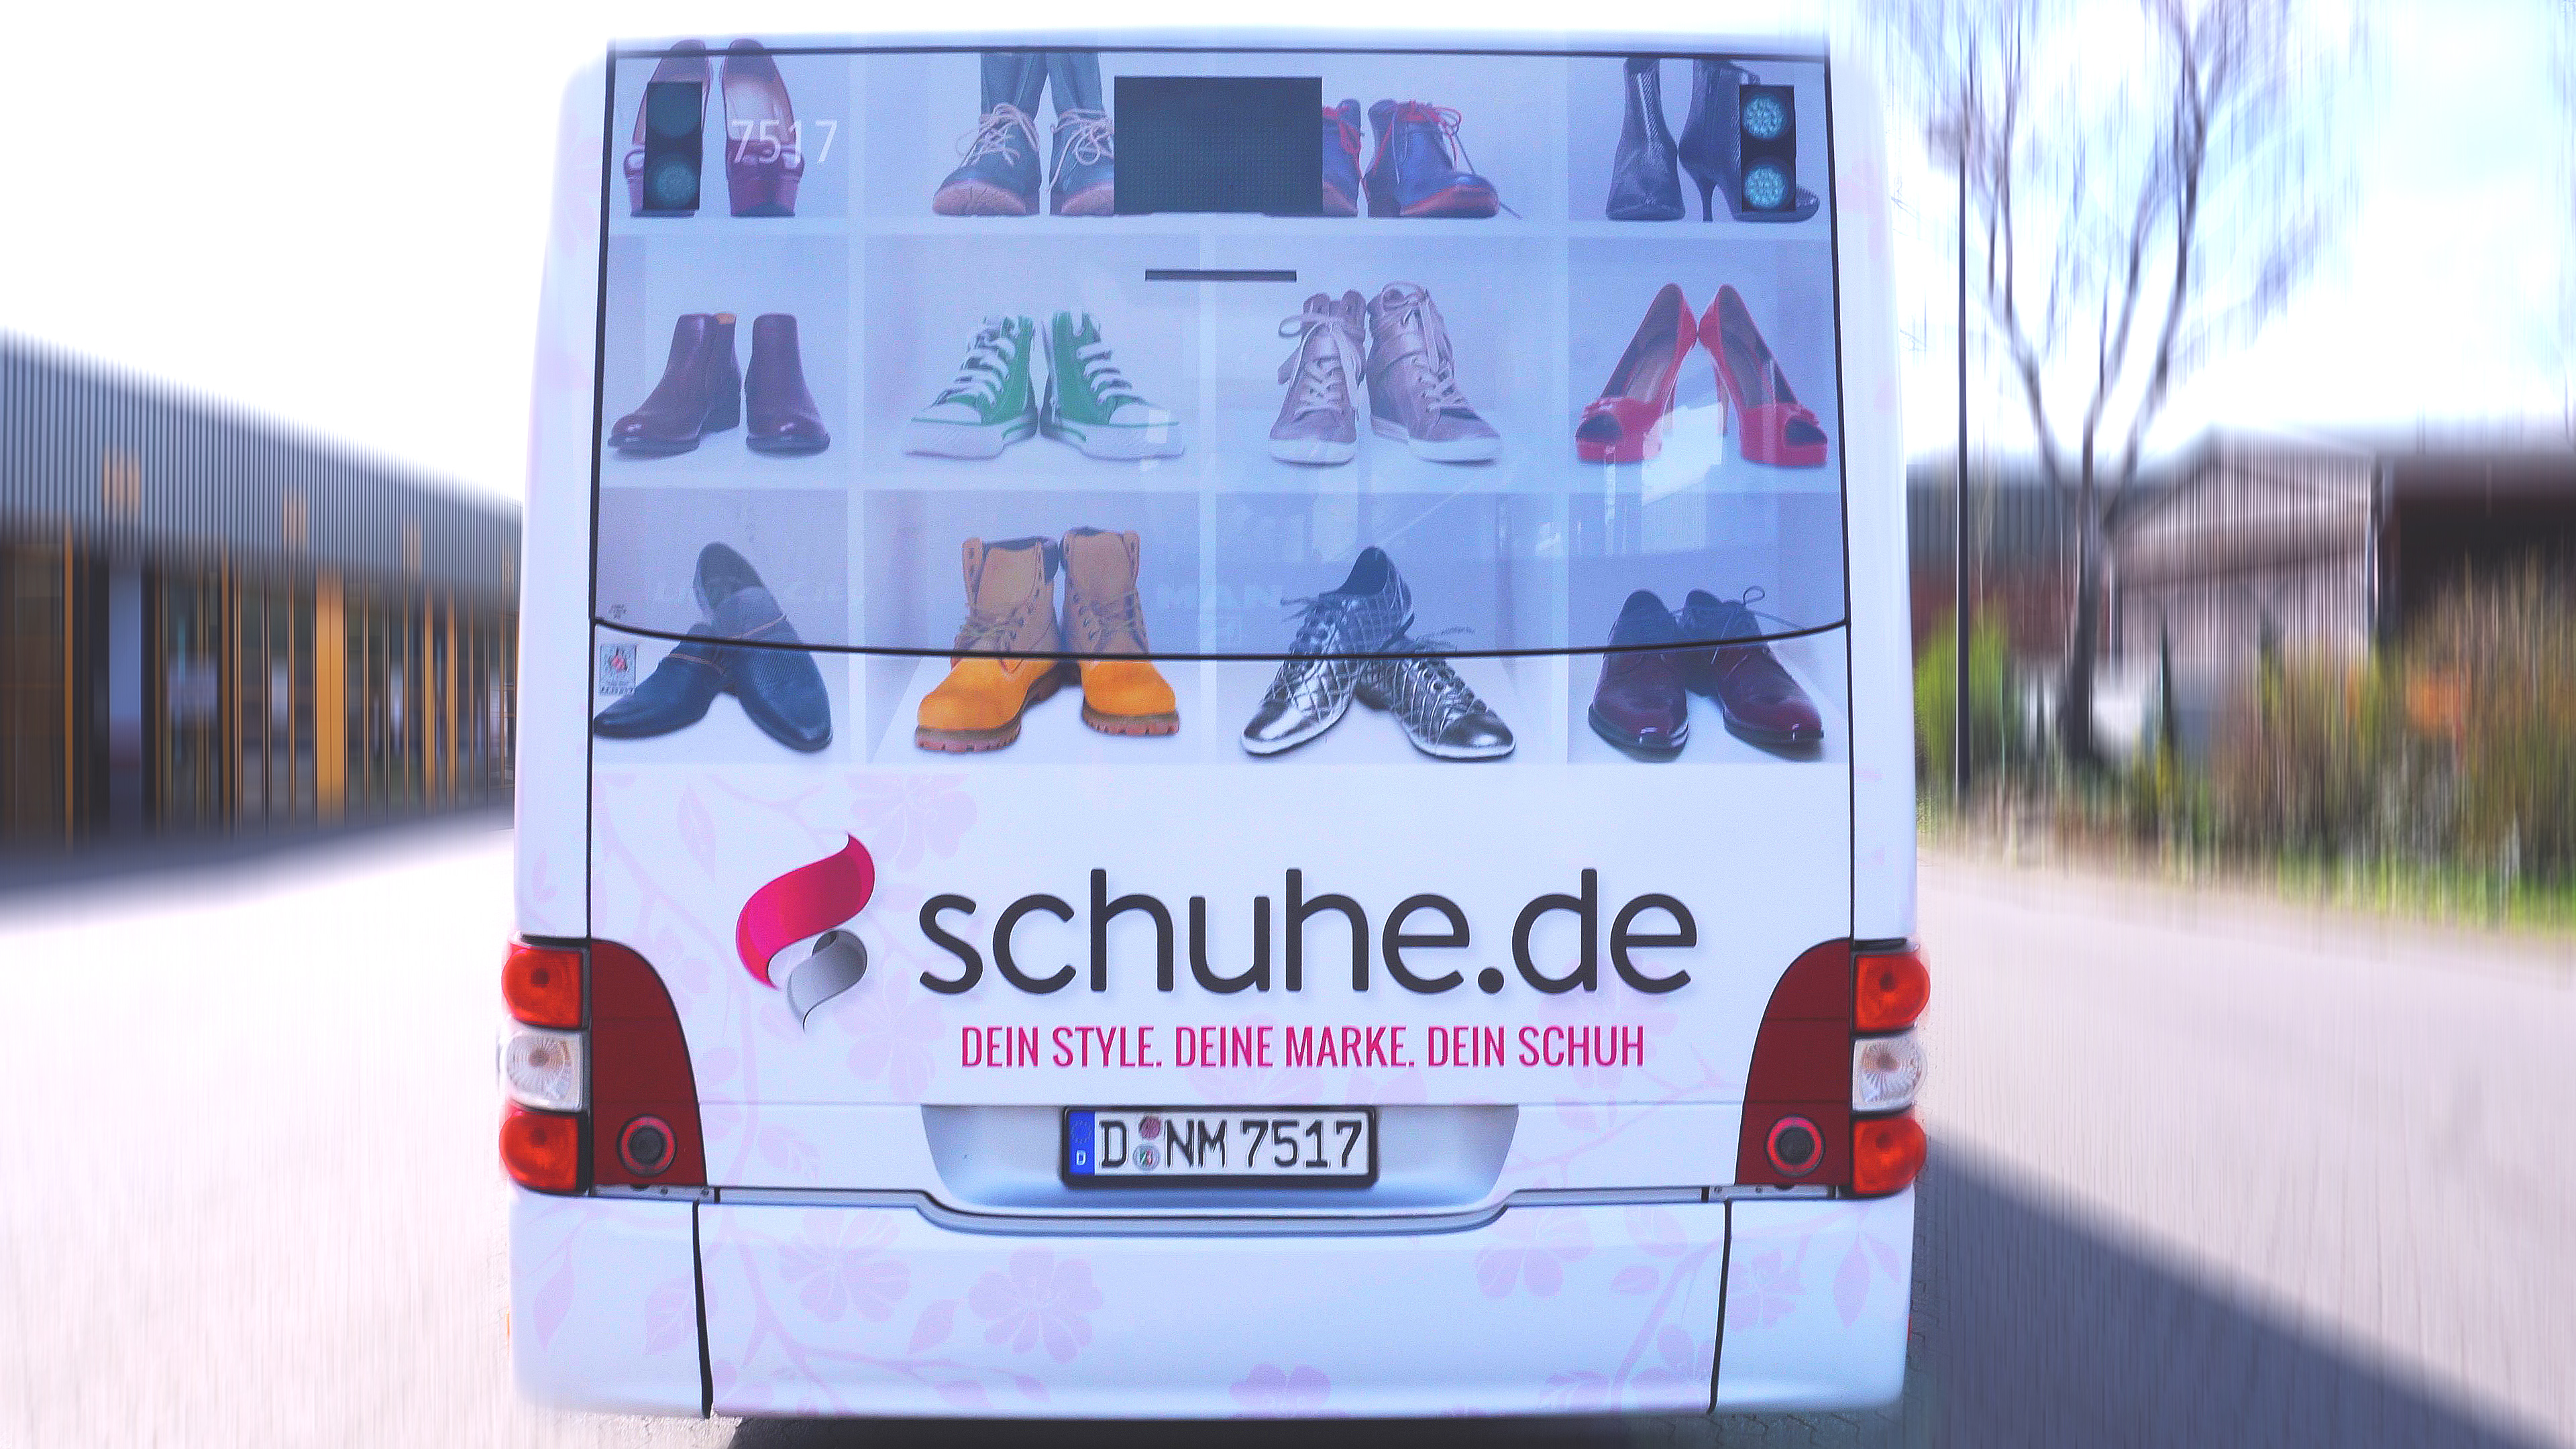 Buswerbung - Schuhe.de - Heck